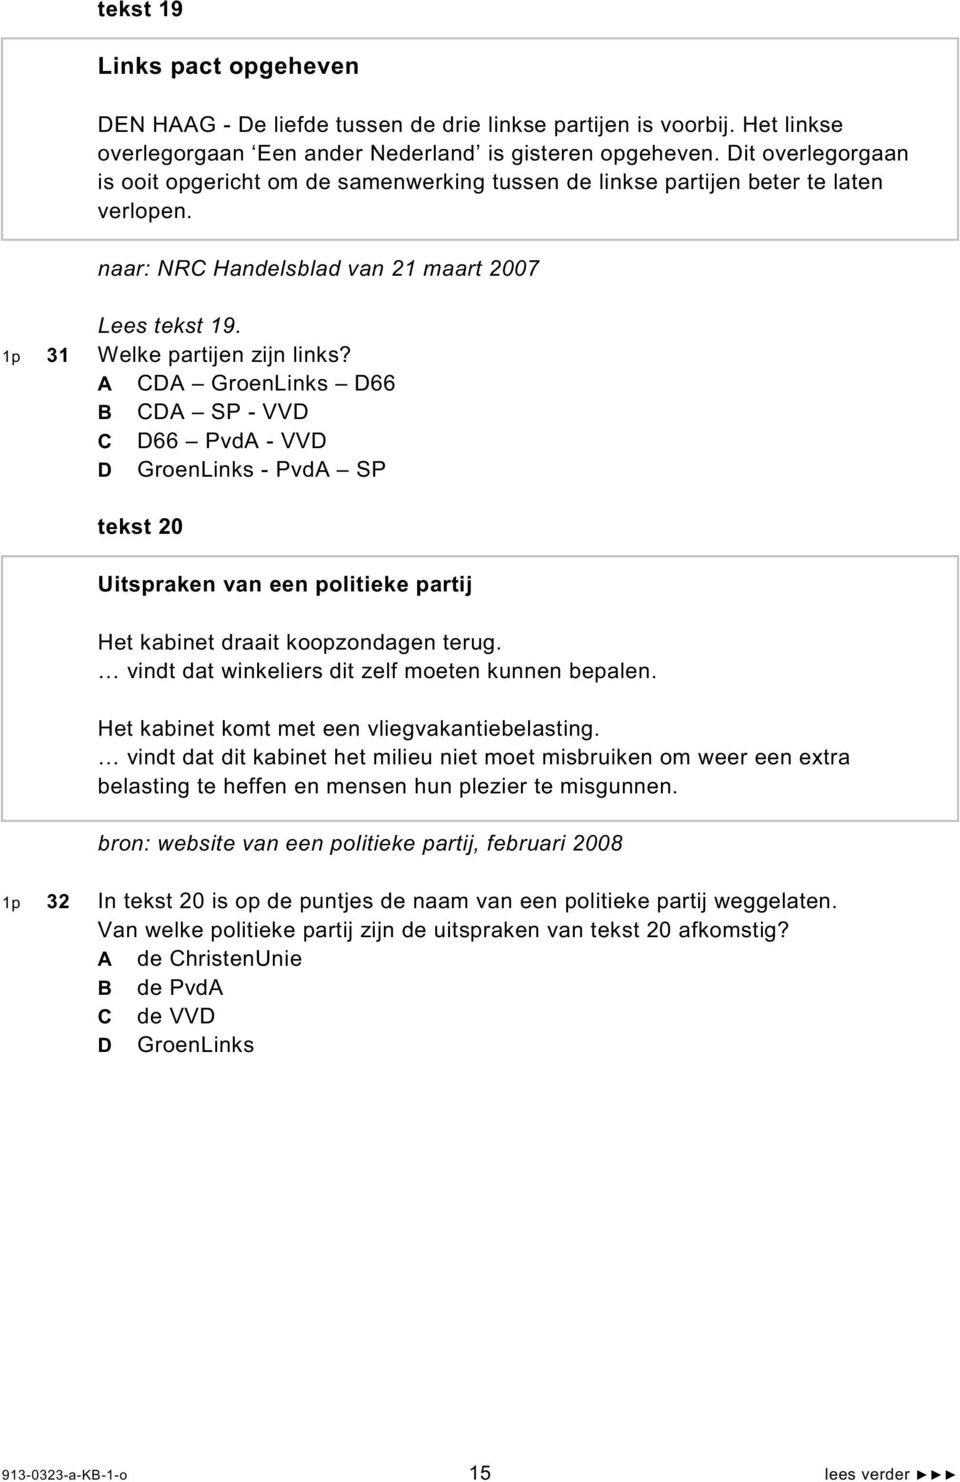 A CDA GroenLinks D66 B CDA SP - VVD C D66 PvdA - VVD D GroenLinks - PvdA SP tekst 20 Uitspraken van een politieke partij Het kabinet draait koopzondagen terug.